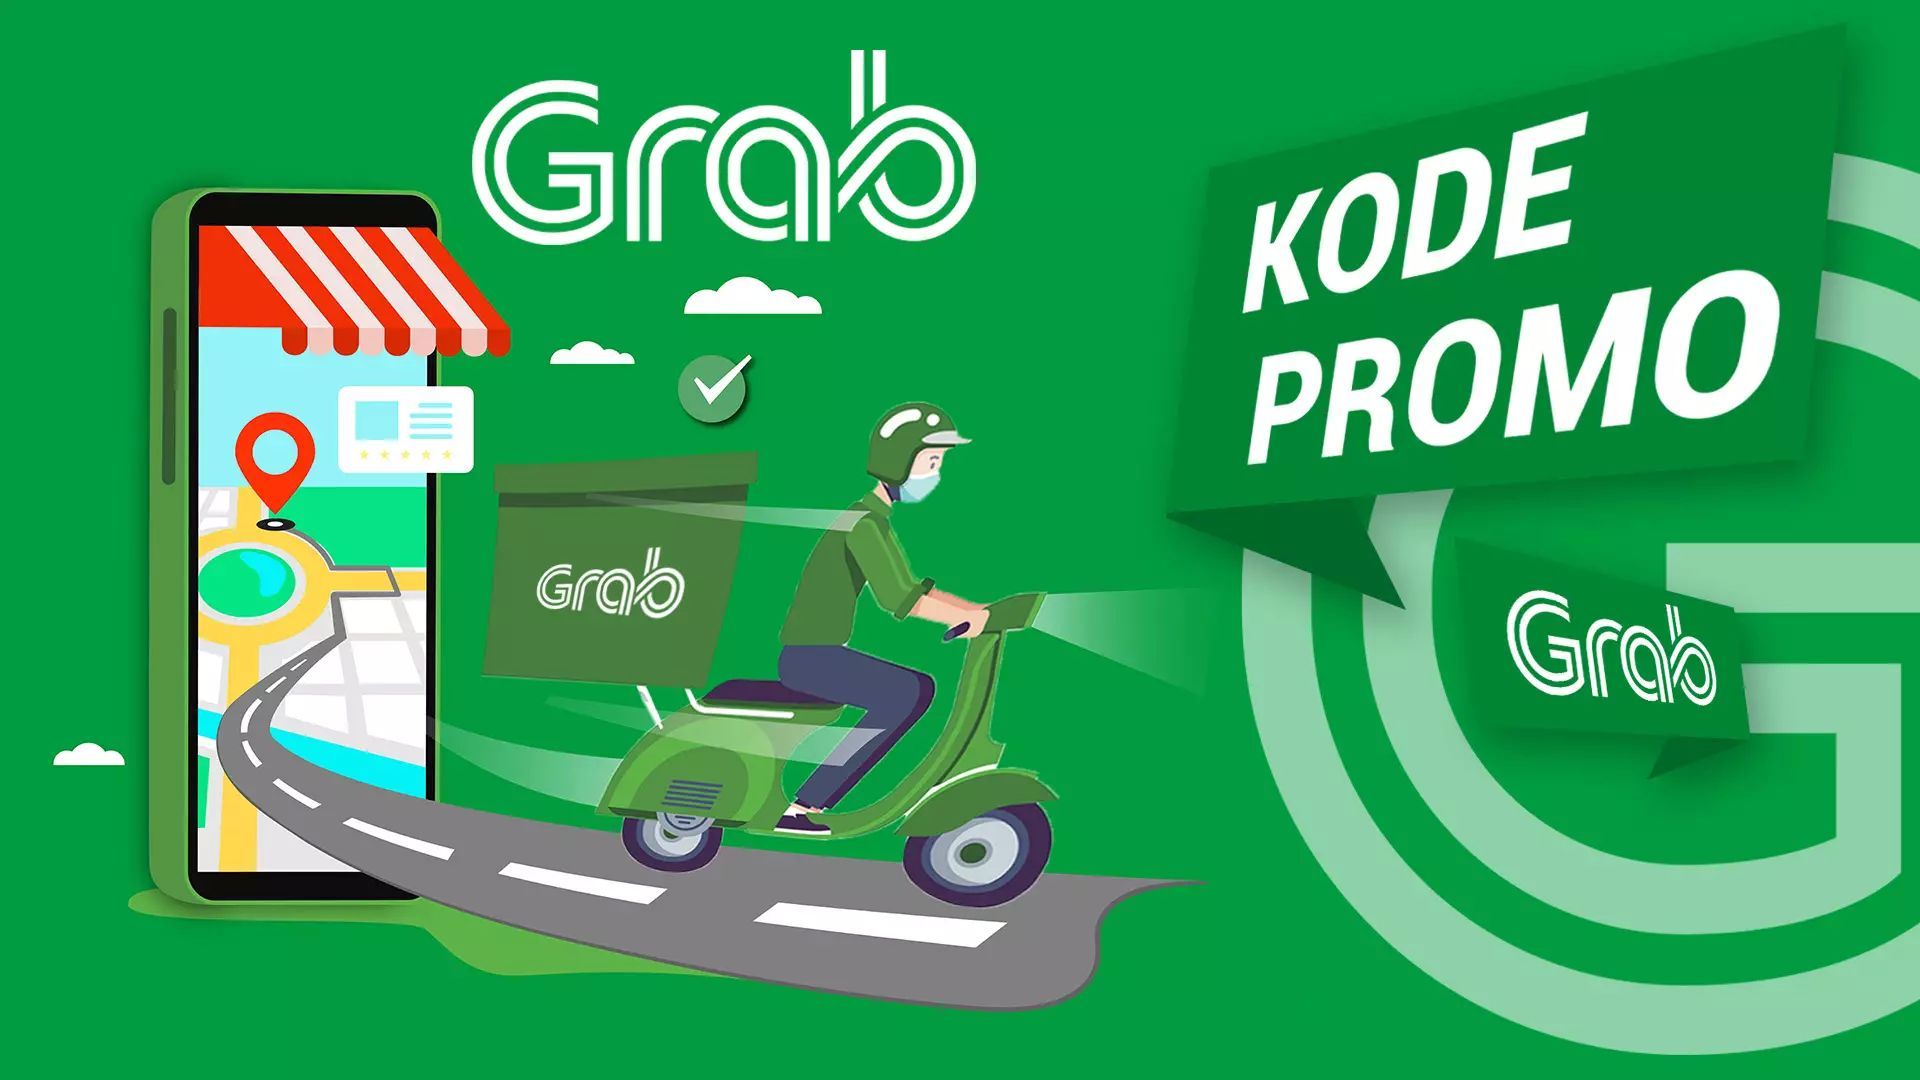 Kode promo Grab, untuk transaksi GrabBike, GrabCar dan GrabFood.